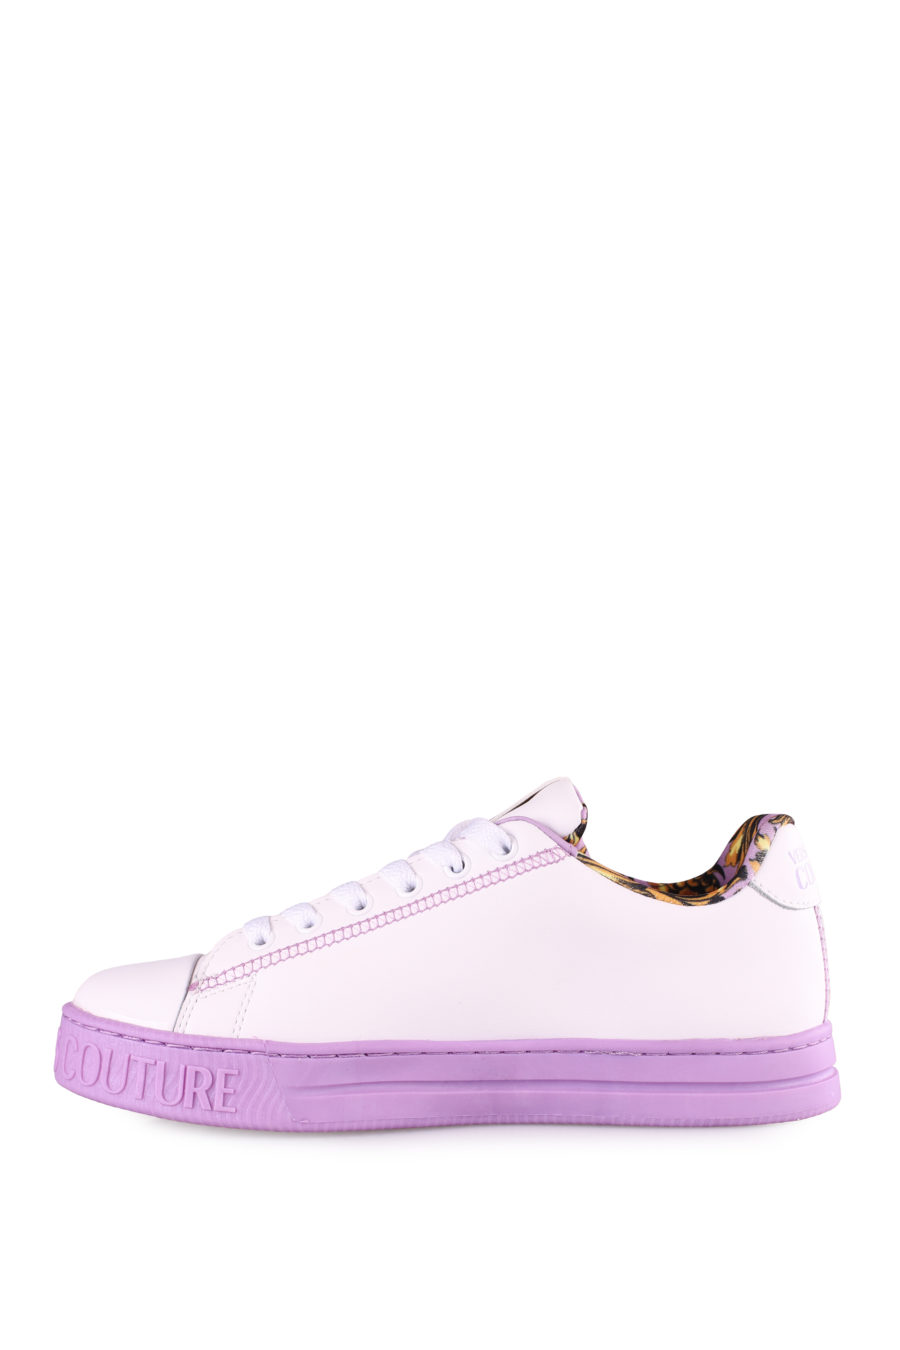 Zapatillas blancas y lila - IMG 4444